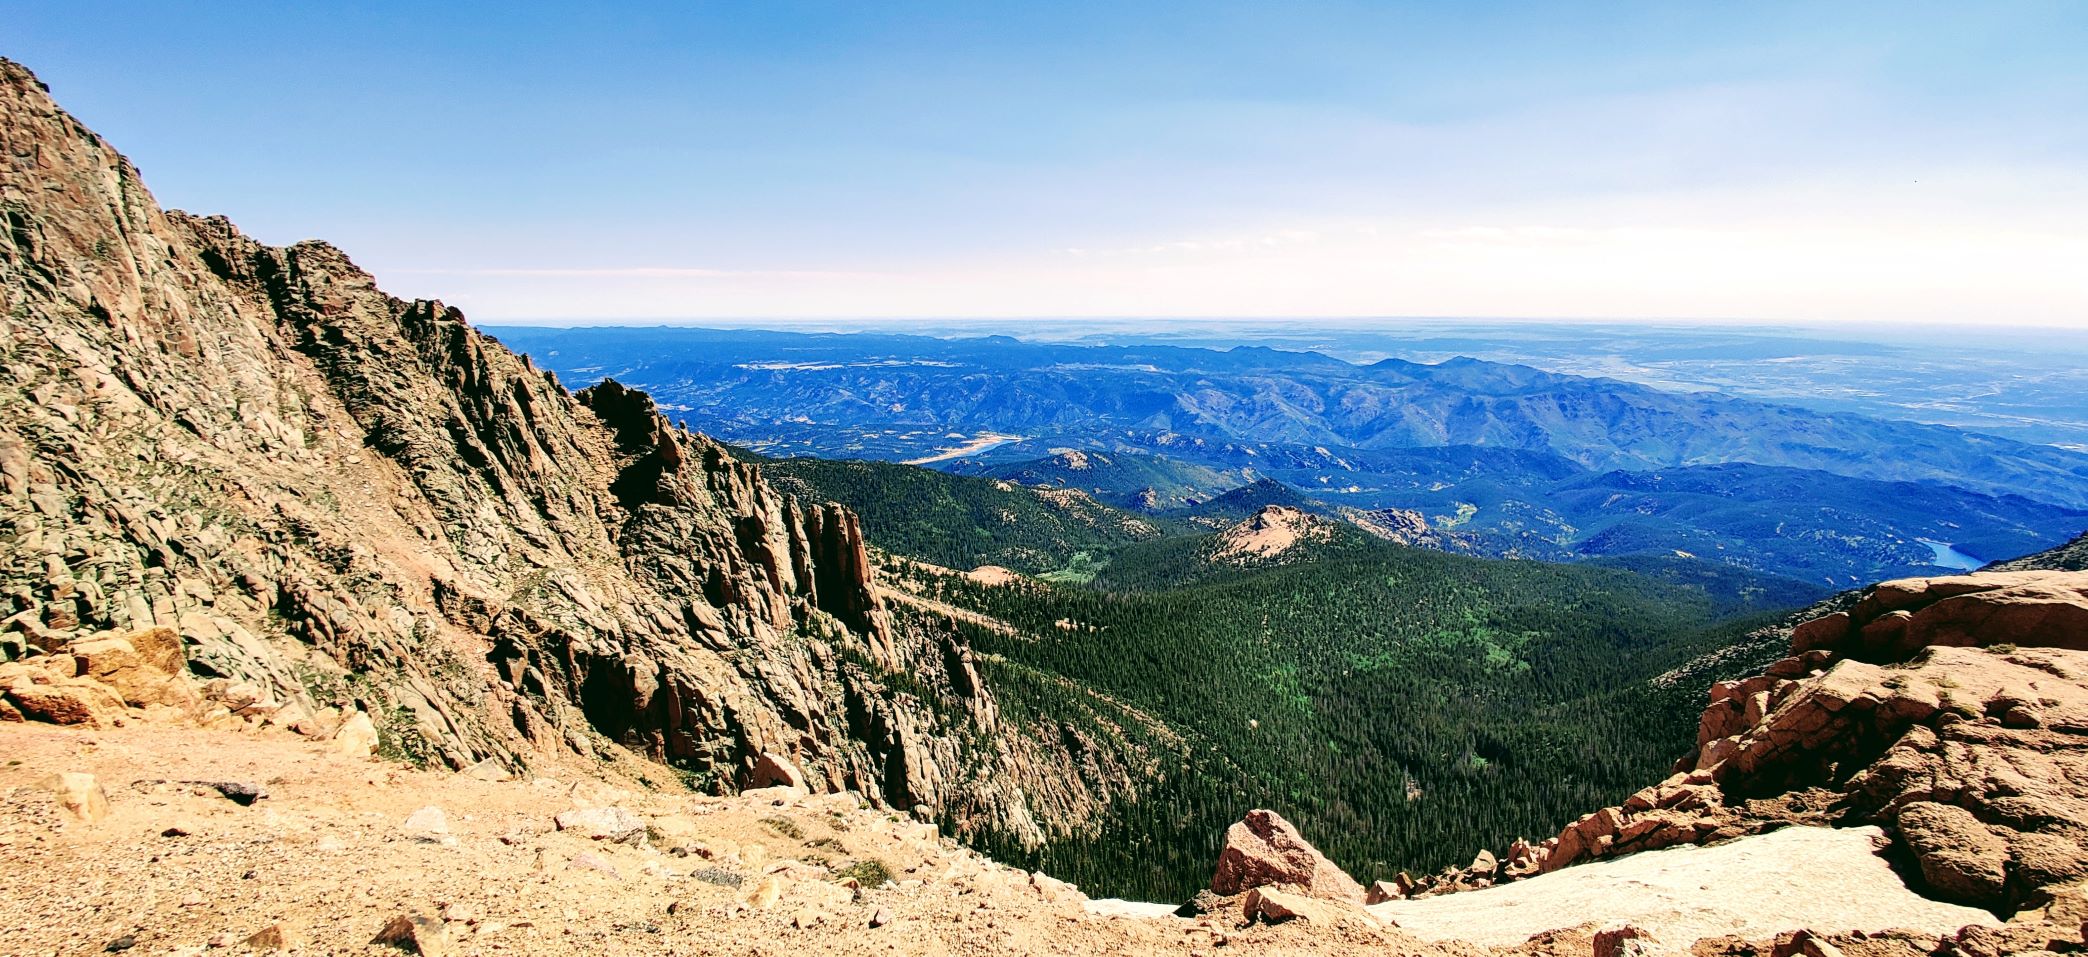 sheer rock face leads into a mountainous valley near Colorado Springs, Colorado